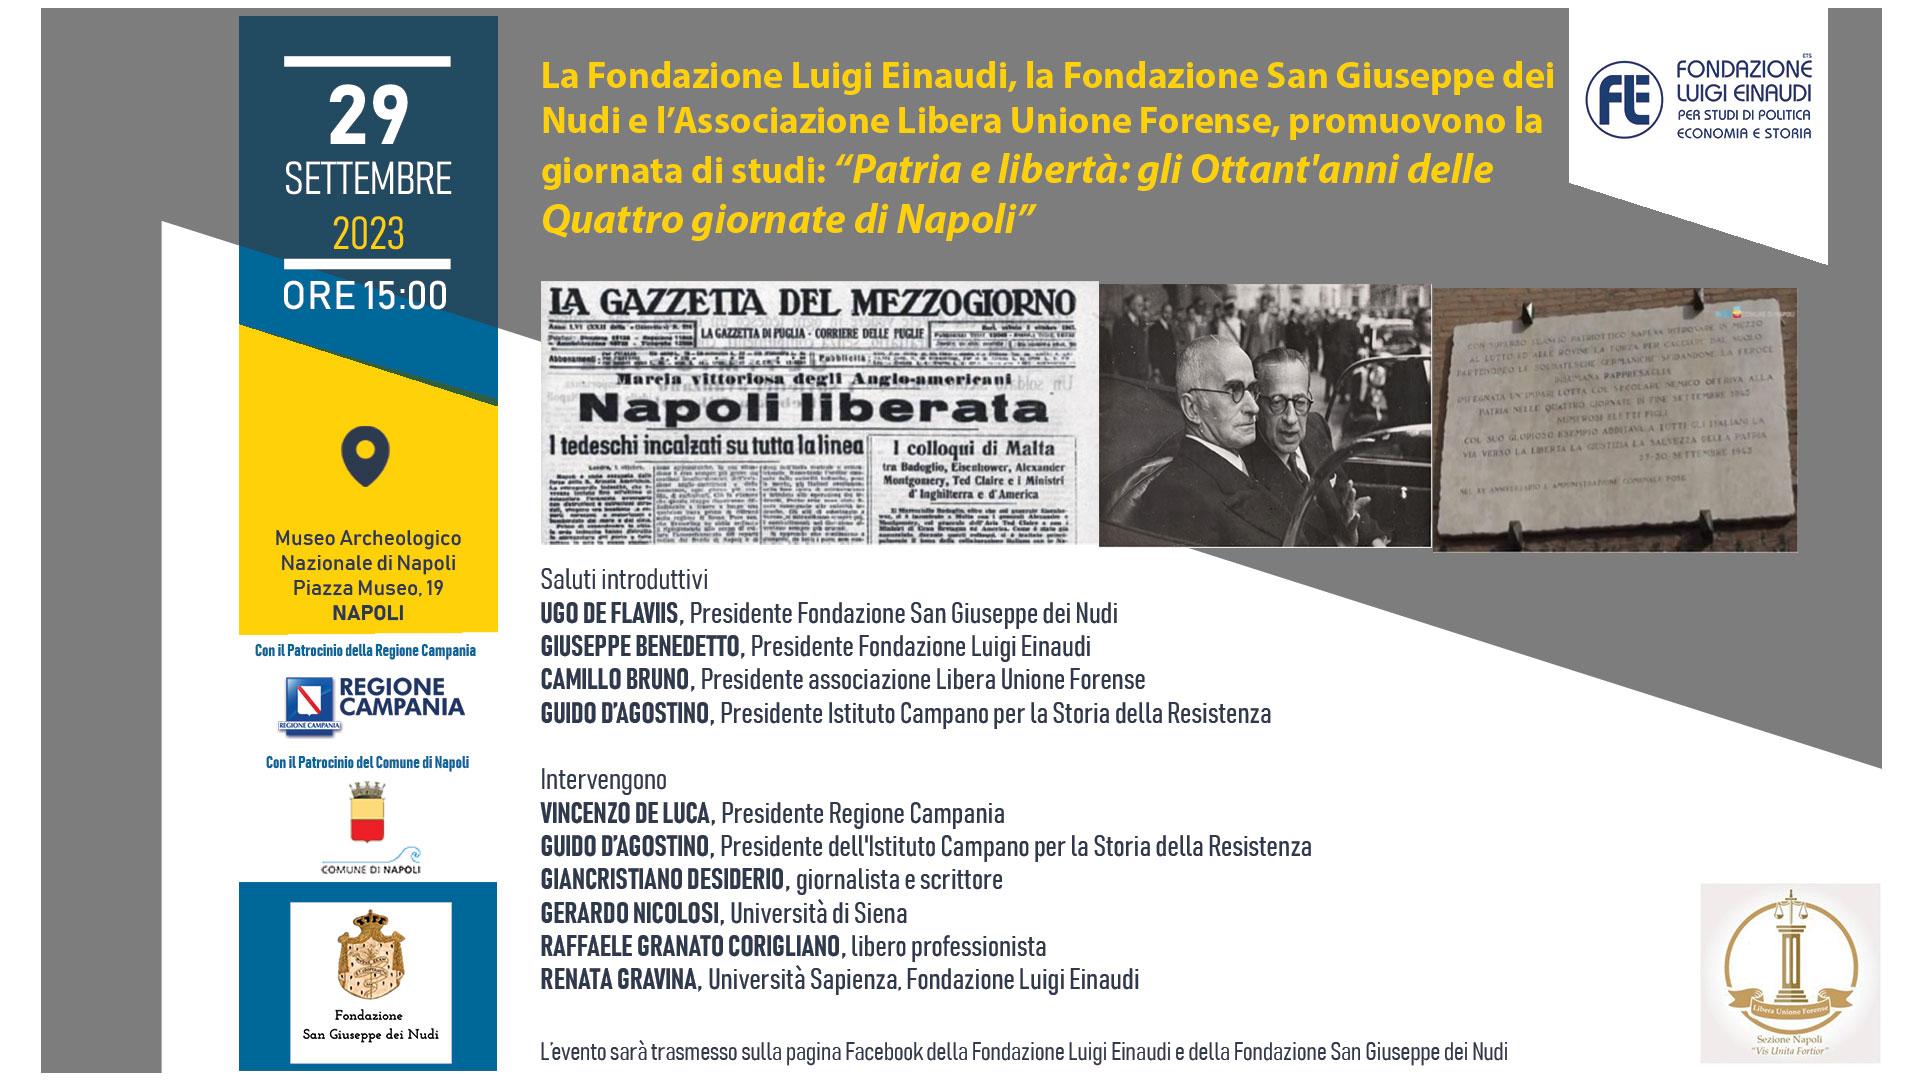 Patria e libertà: gli Ottant’anni delle Quattro giornate di Napoli